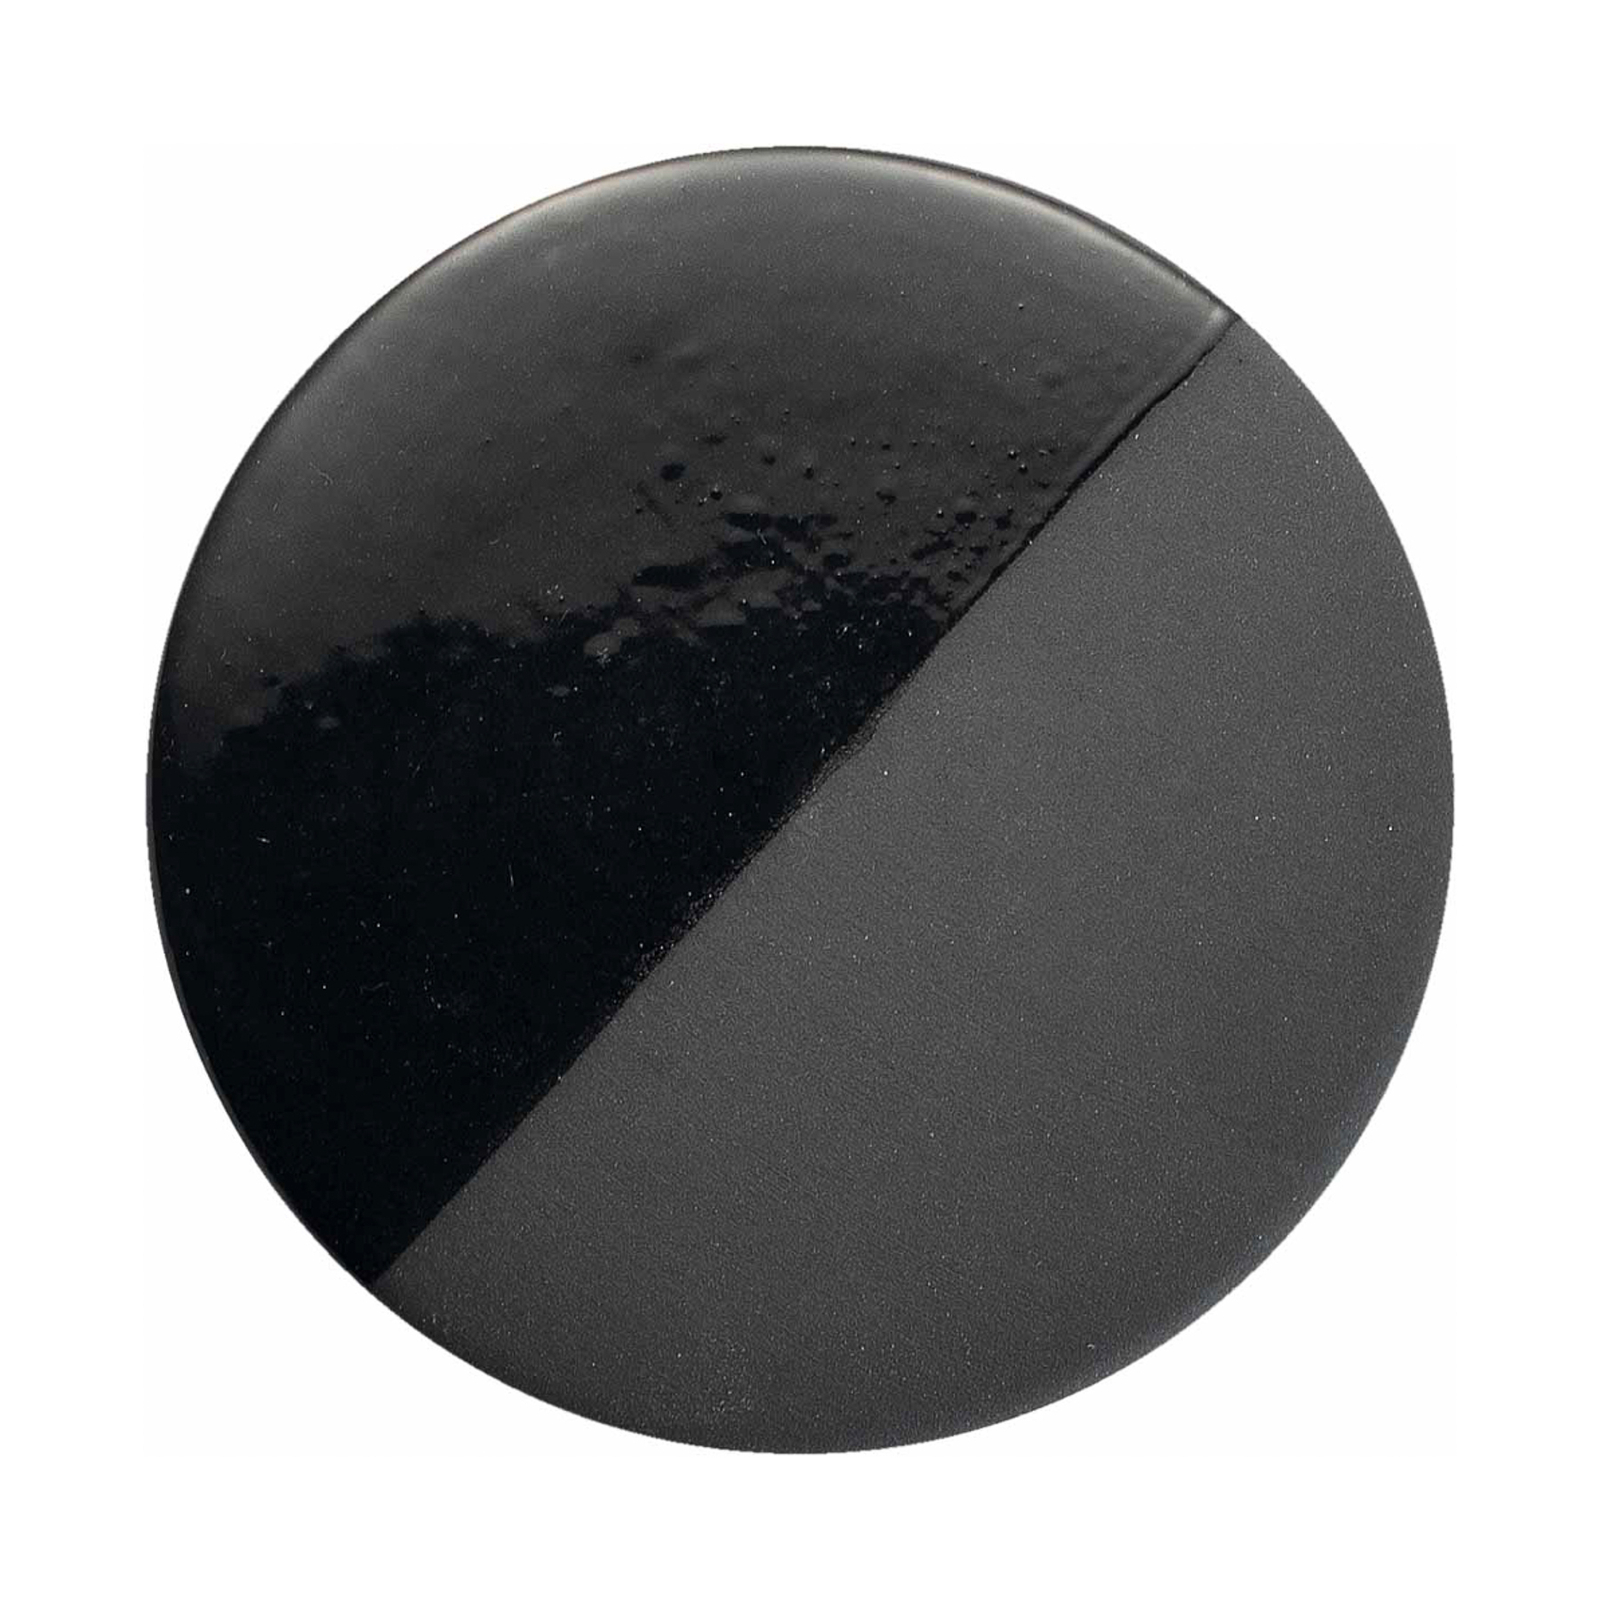 Obesek Caxixi iz keramike, črne barve